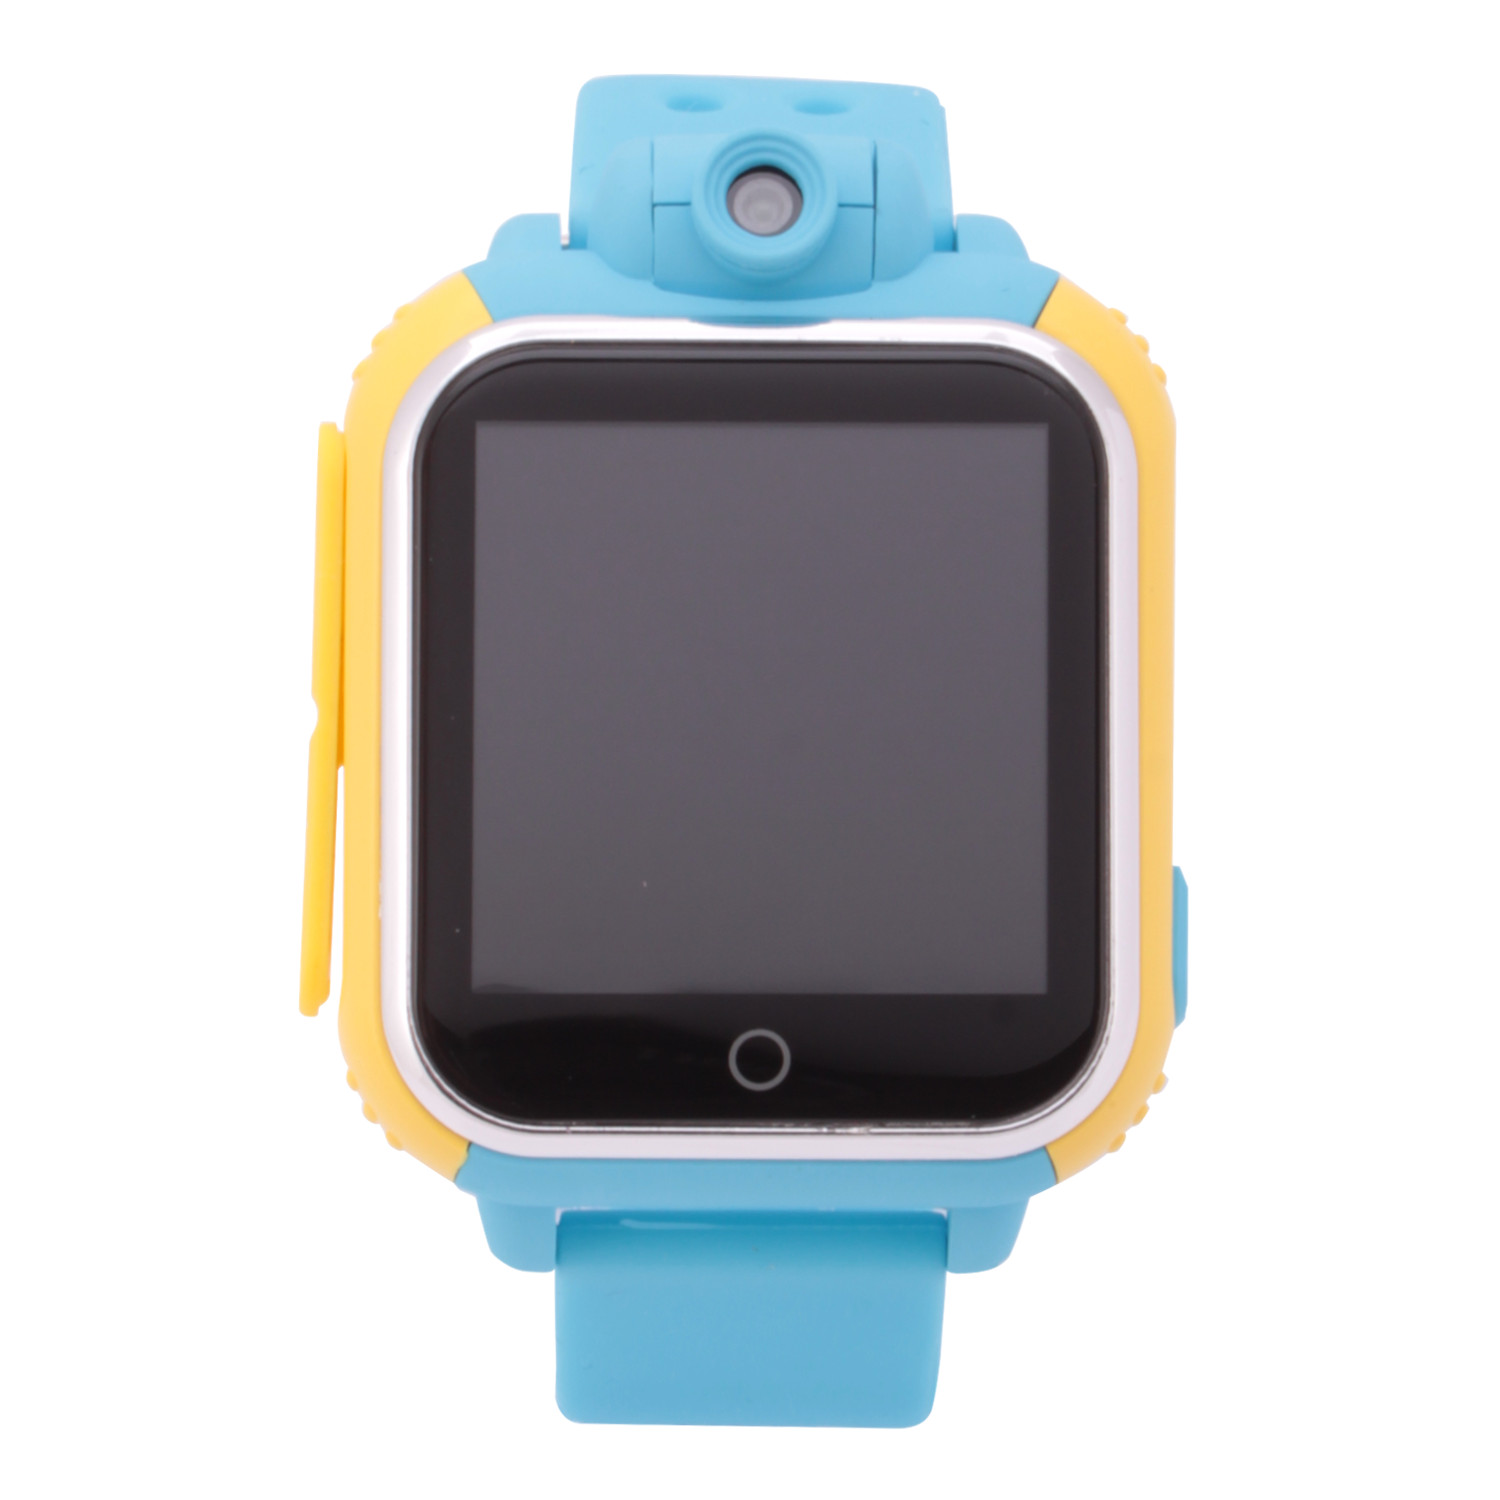 Часы-GPS Smart Watch Gw100 с камерой голубые